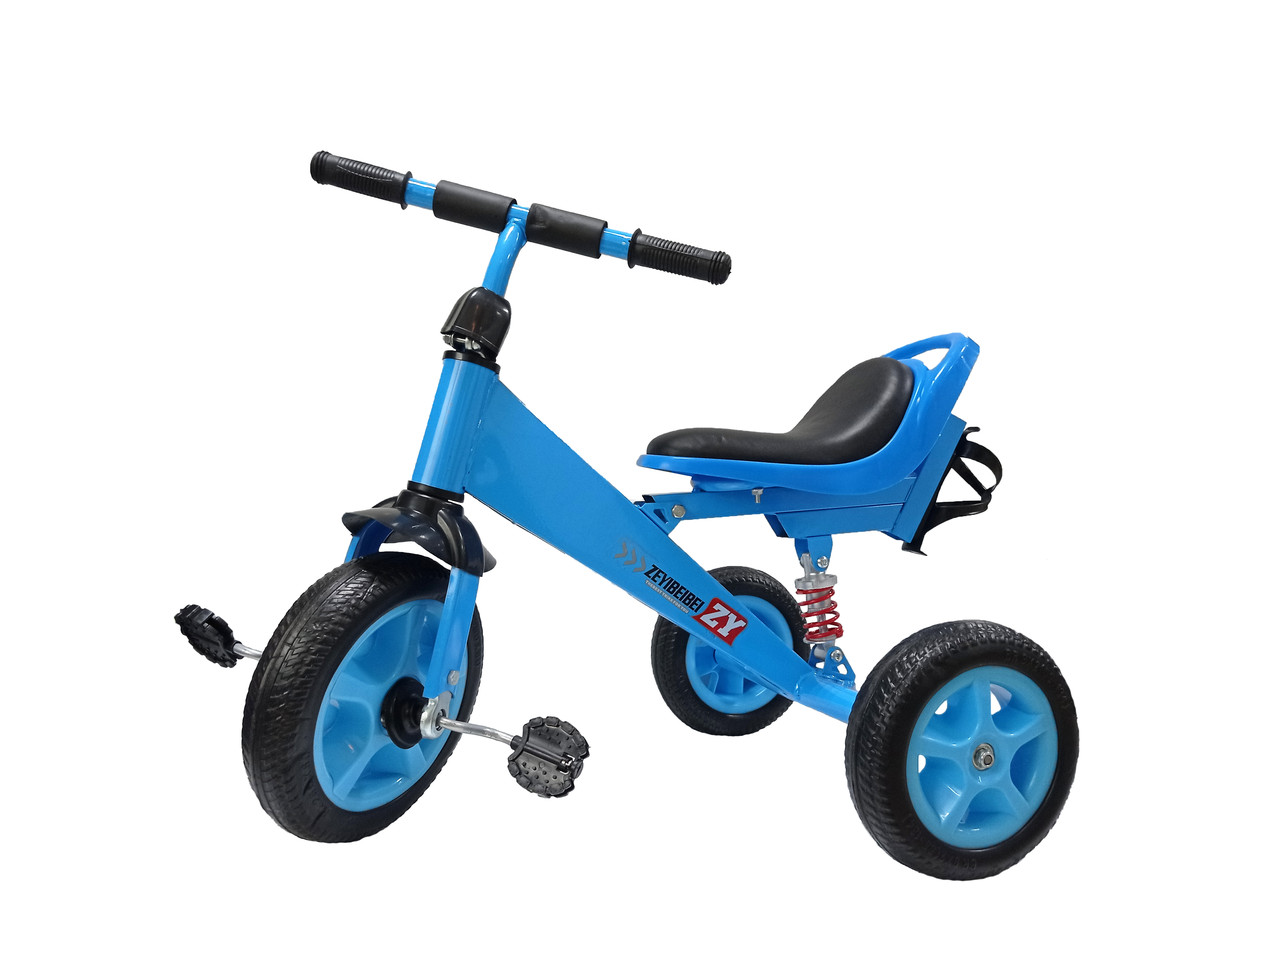 Детский трехколесный велосипед синий